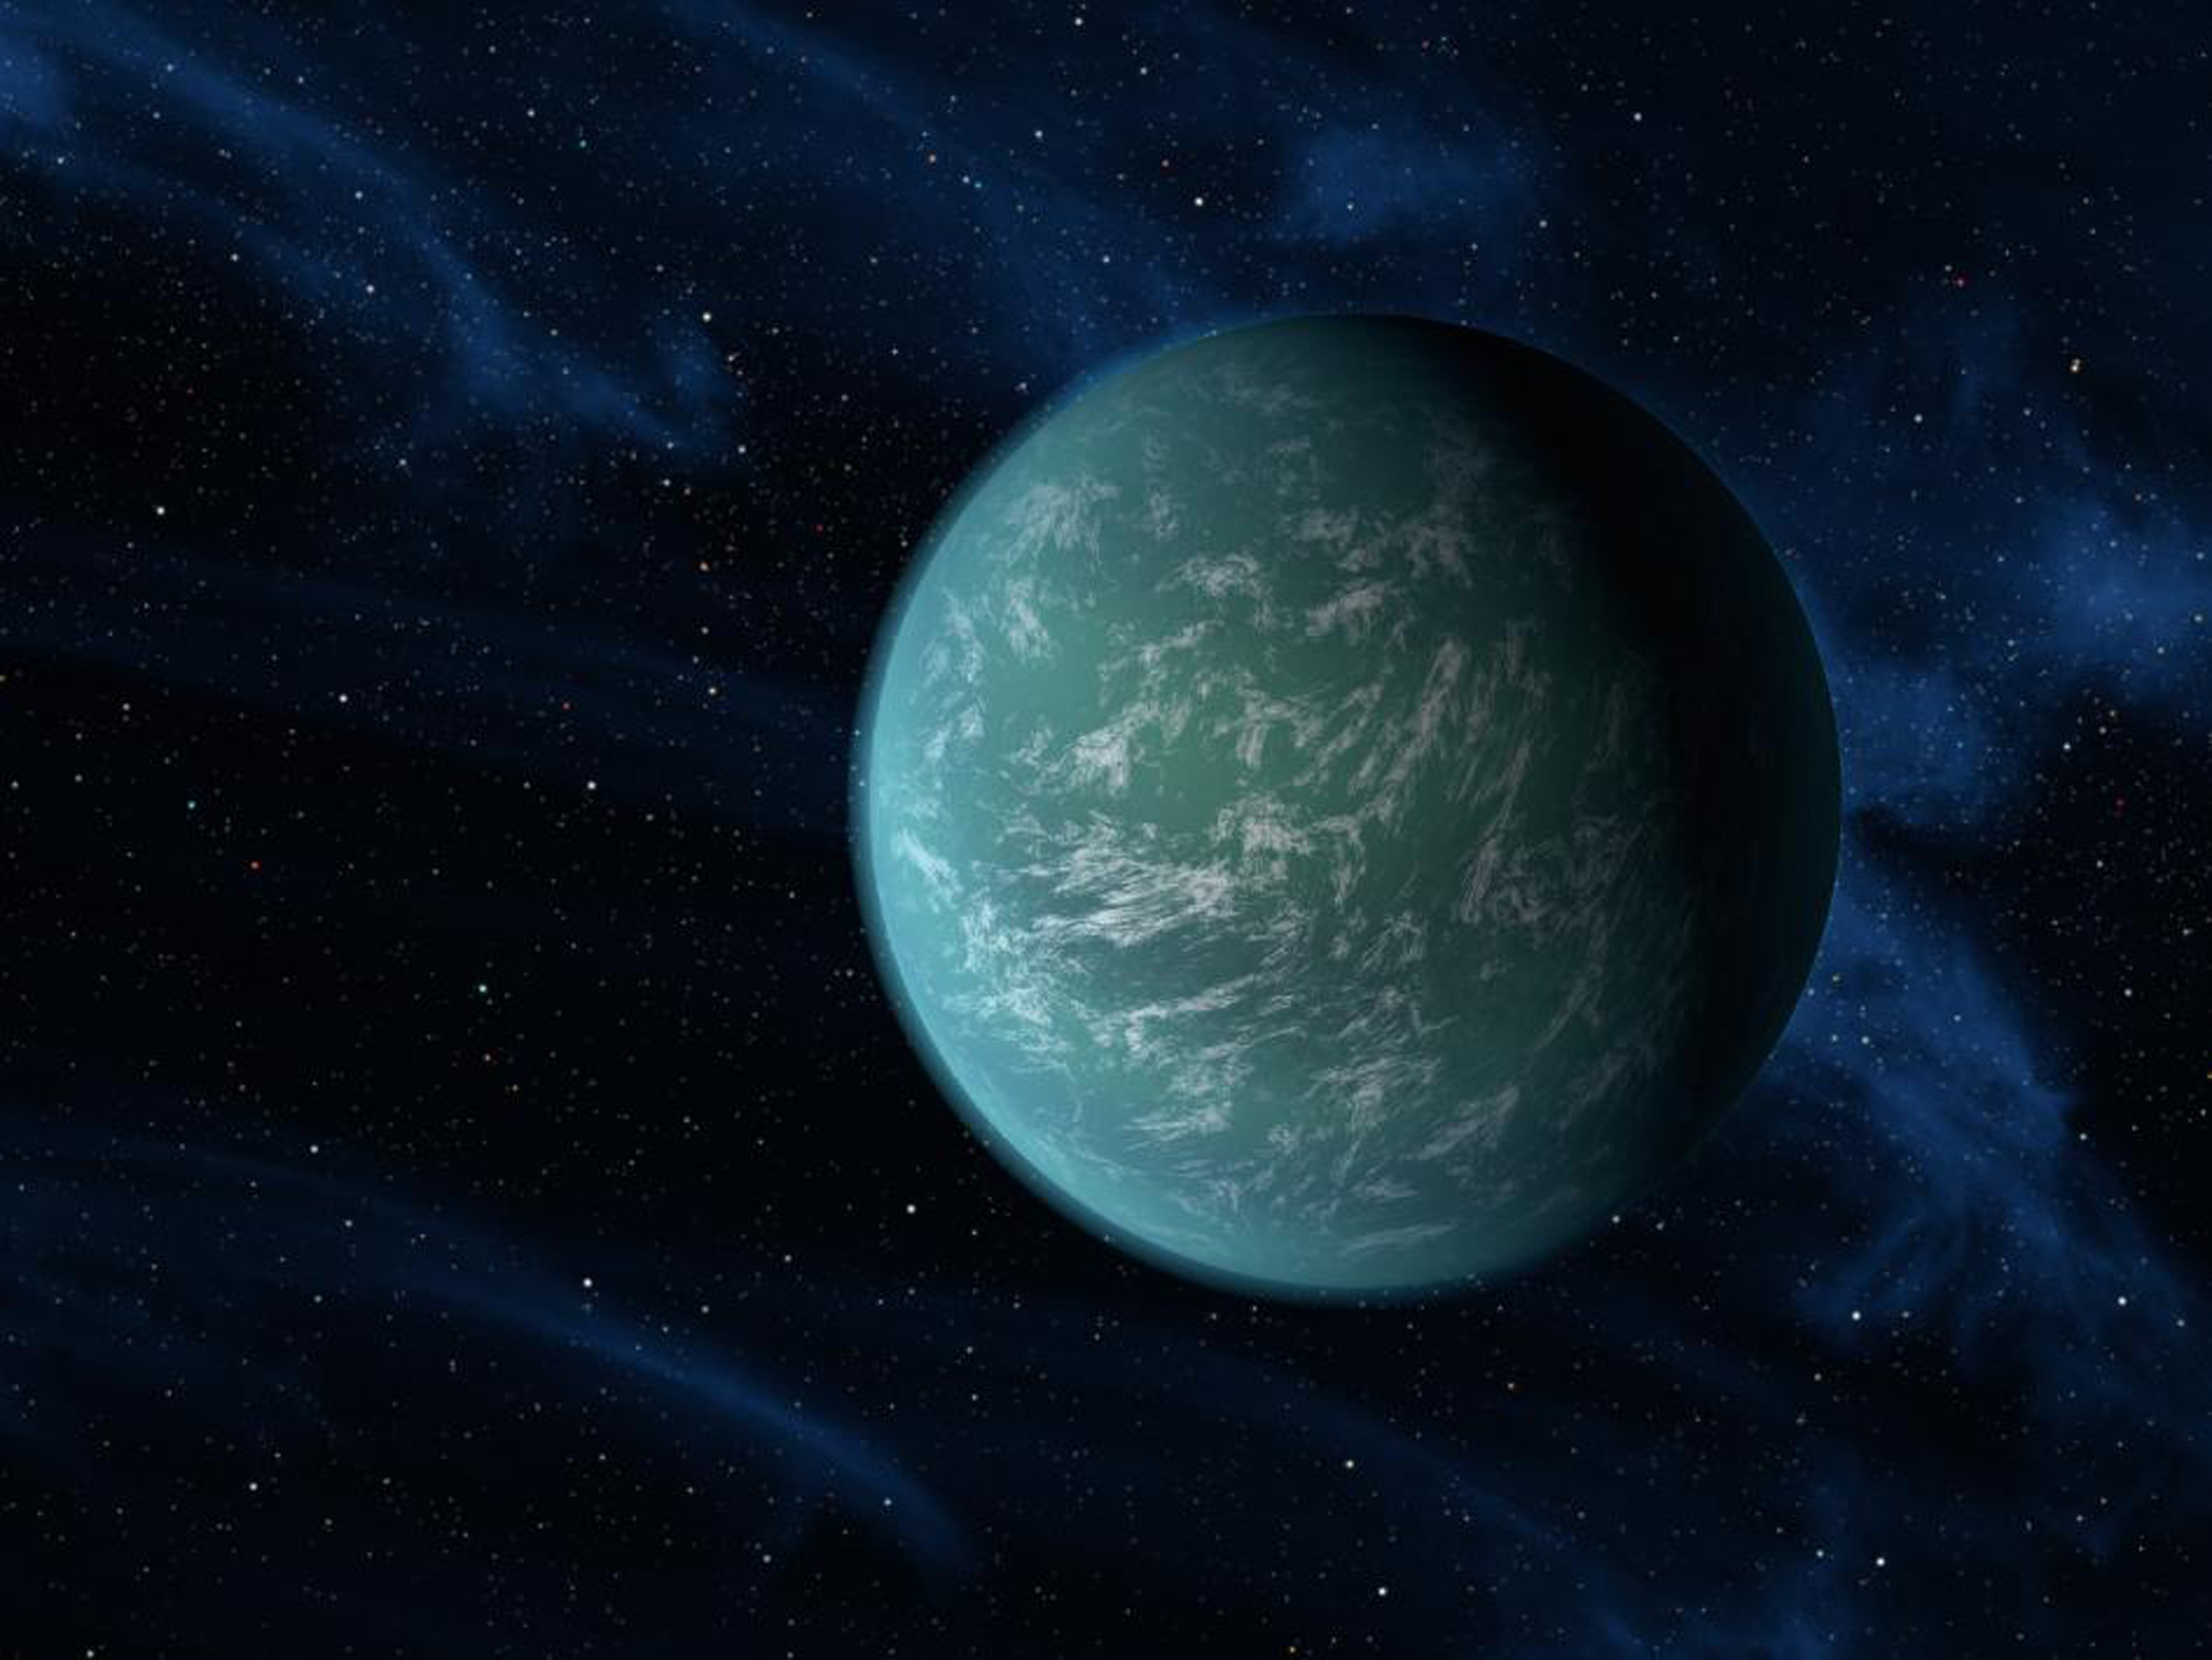 En skiss av Kepler-22b utgiven av den amerikanska rymdstyrelsen Nasa.